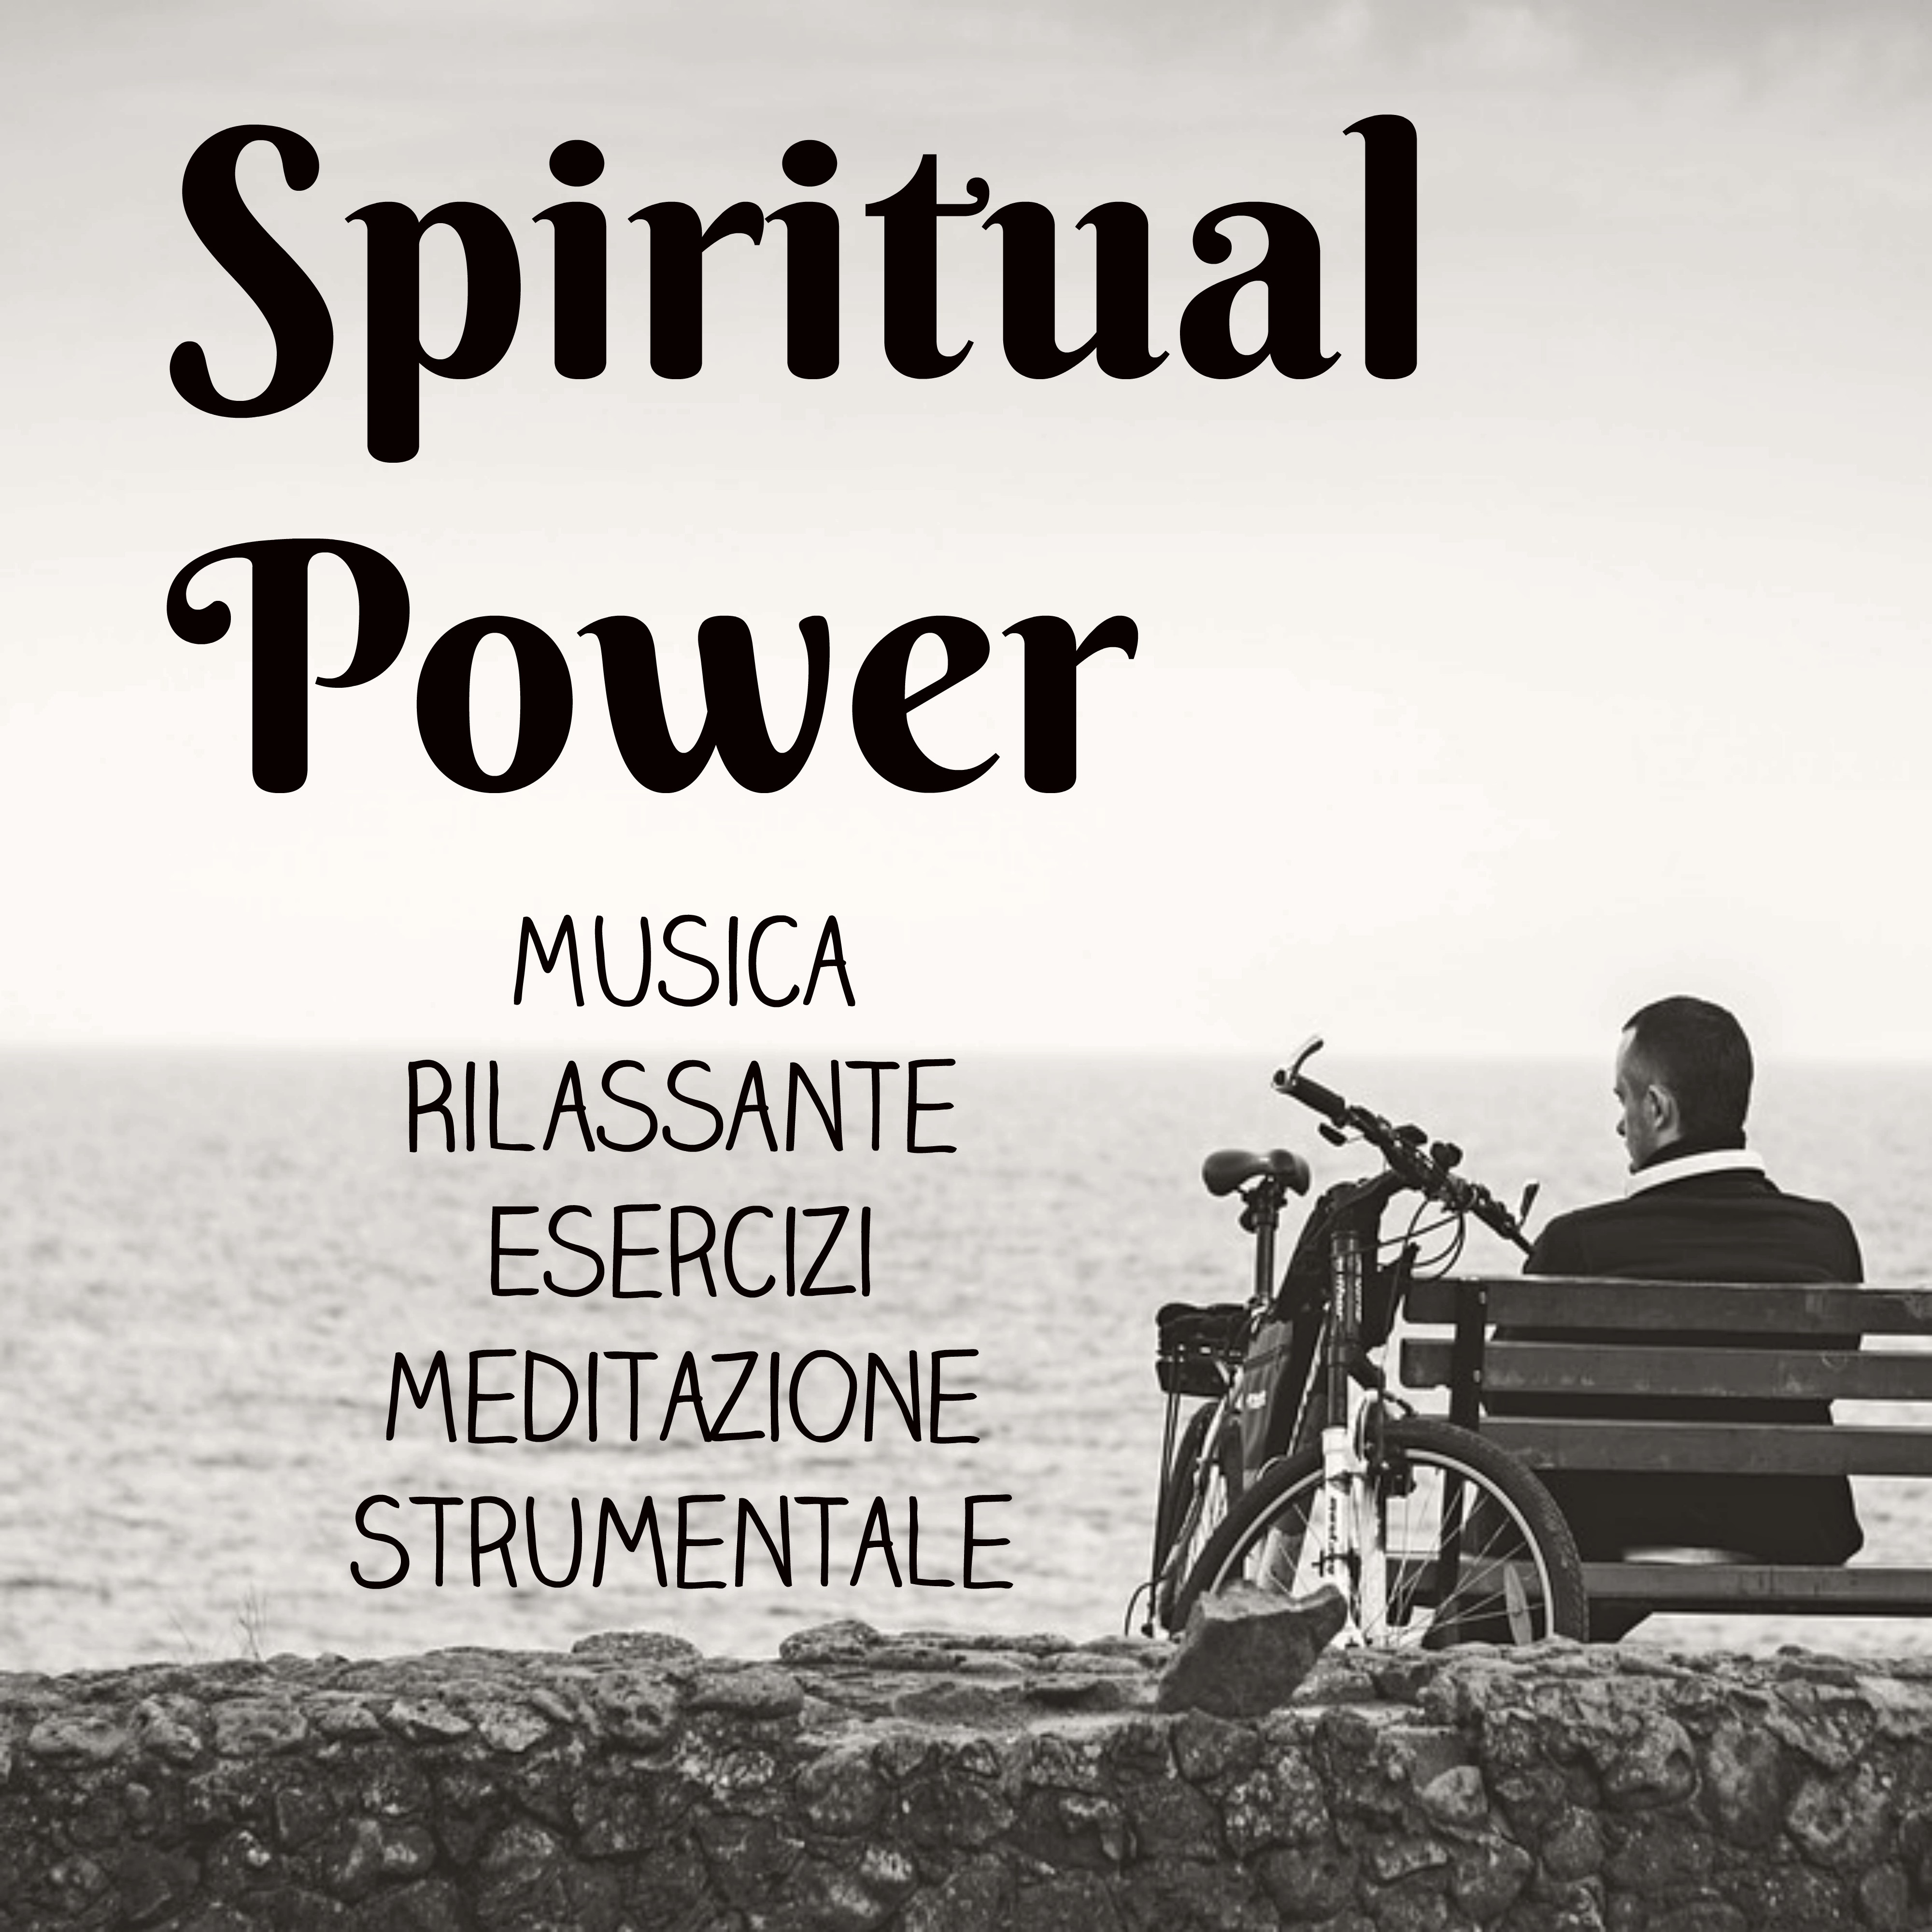 Spiritual Power - Musica Rilassante Esercizi Meditazione Strumentale per Vita Semplice Ritiro Spirituale Potere della Mente e Massaggio Ayurvedico